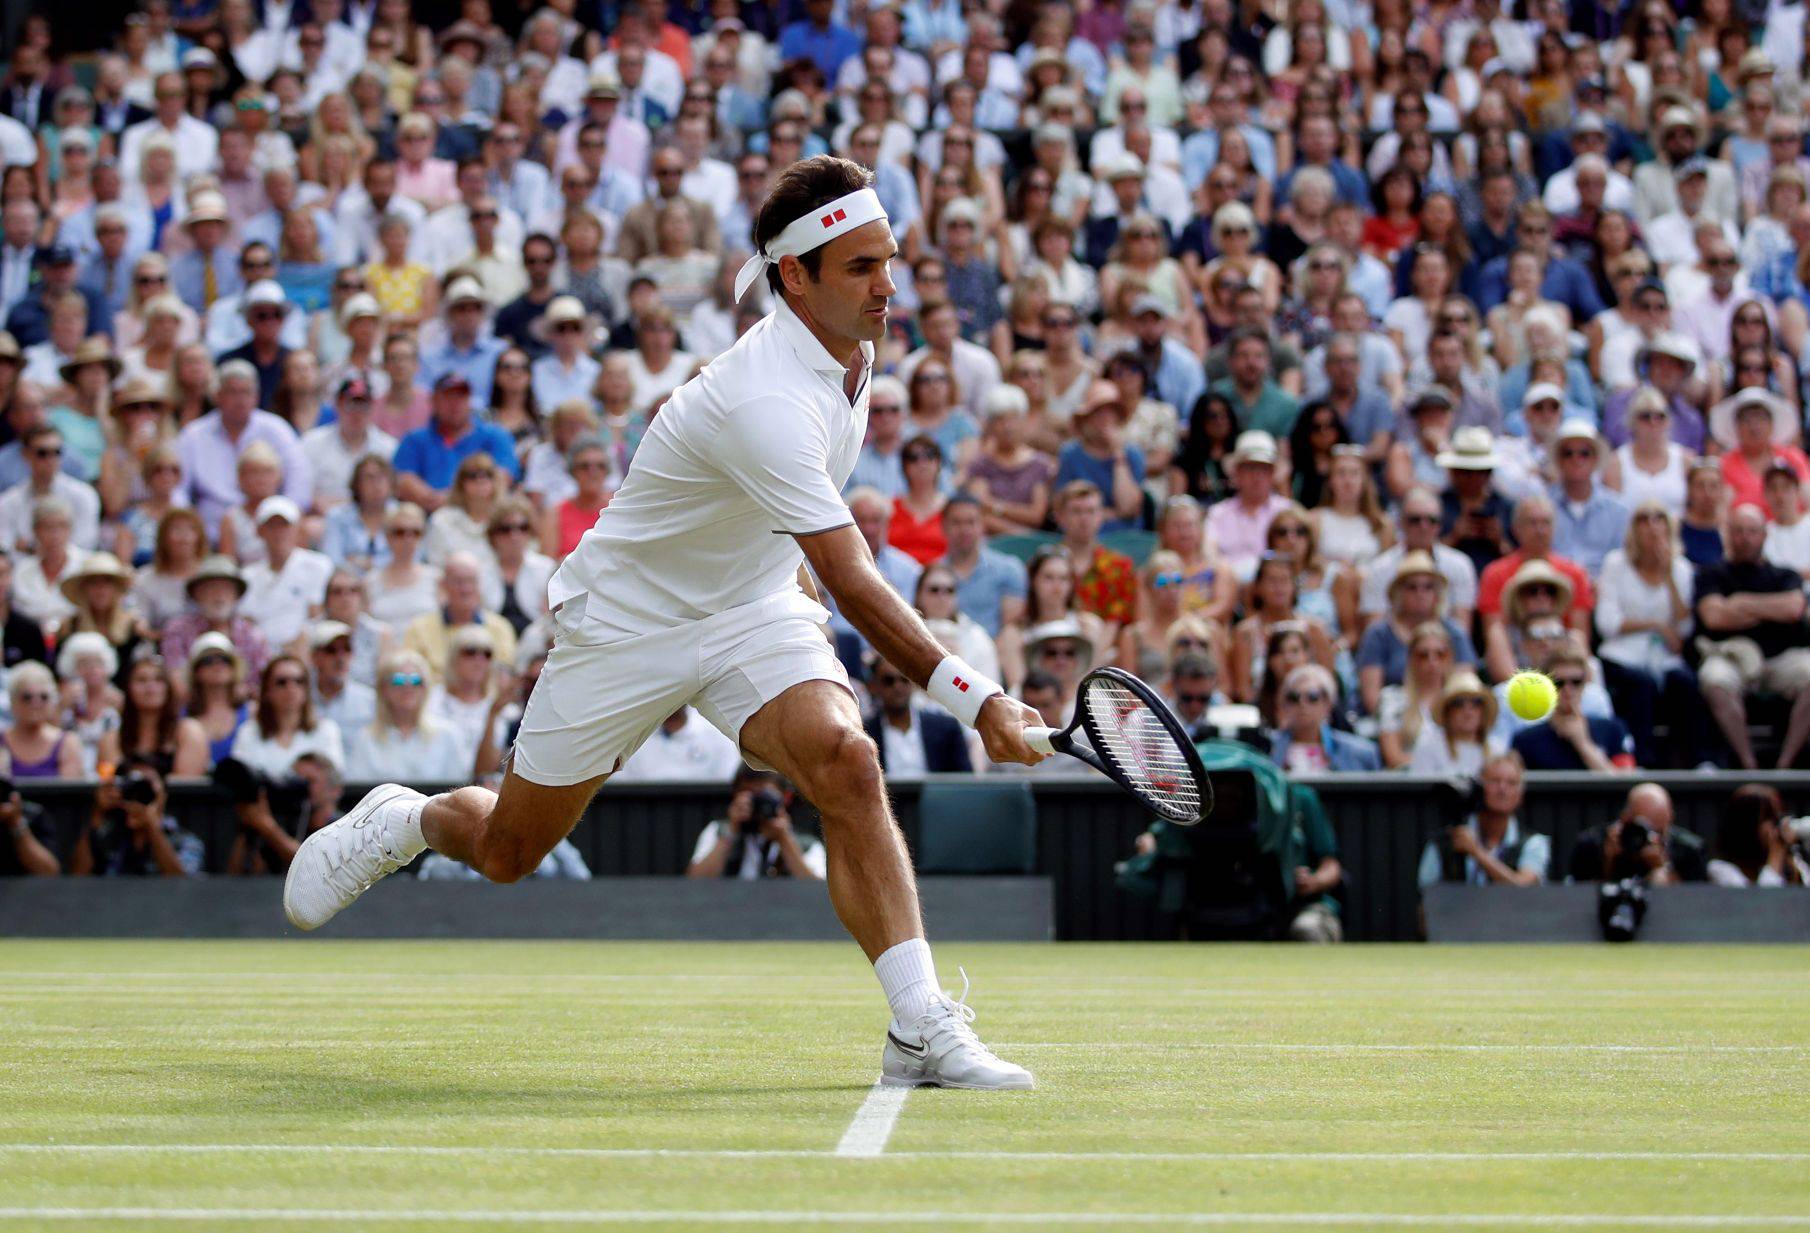 Rafa mu ne može ništa: Roger po 12. put u finalu Wimbledona